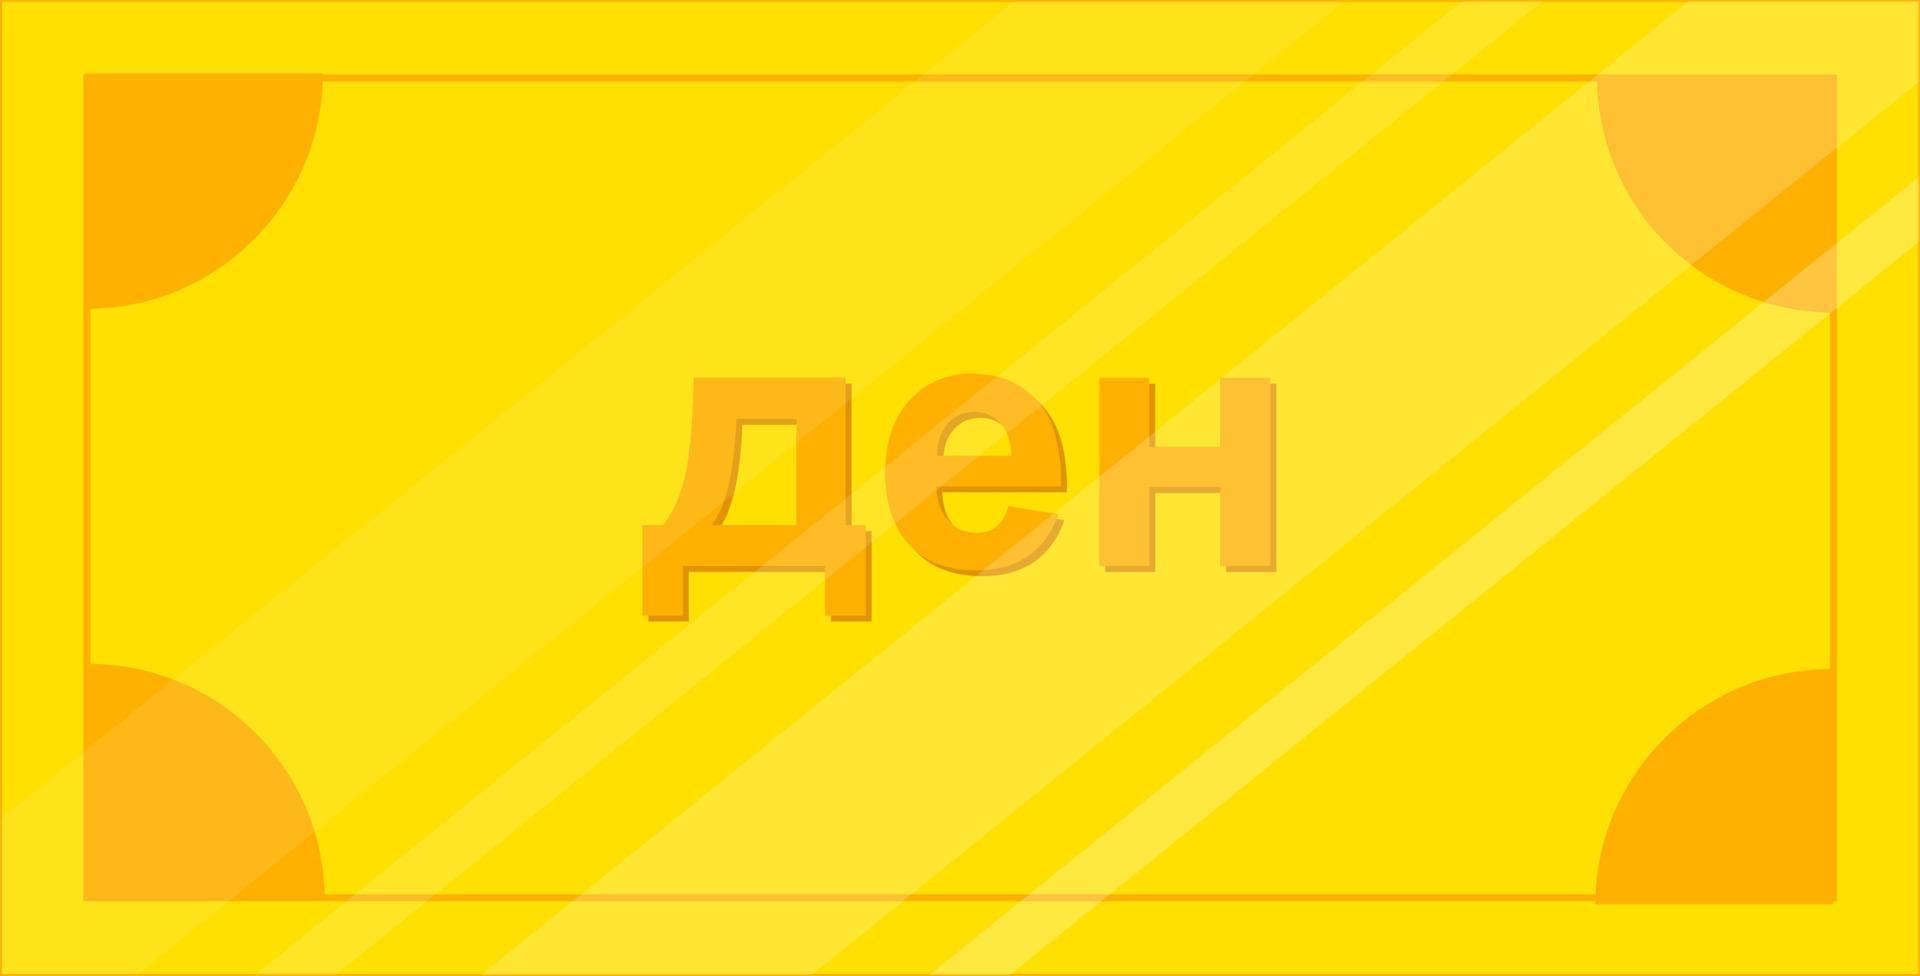 Nordmazedonien Flaggenvektor handgezeichnet, Denarvektor handgezeichnet vektor